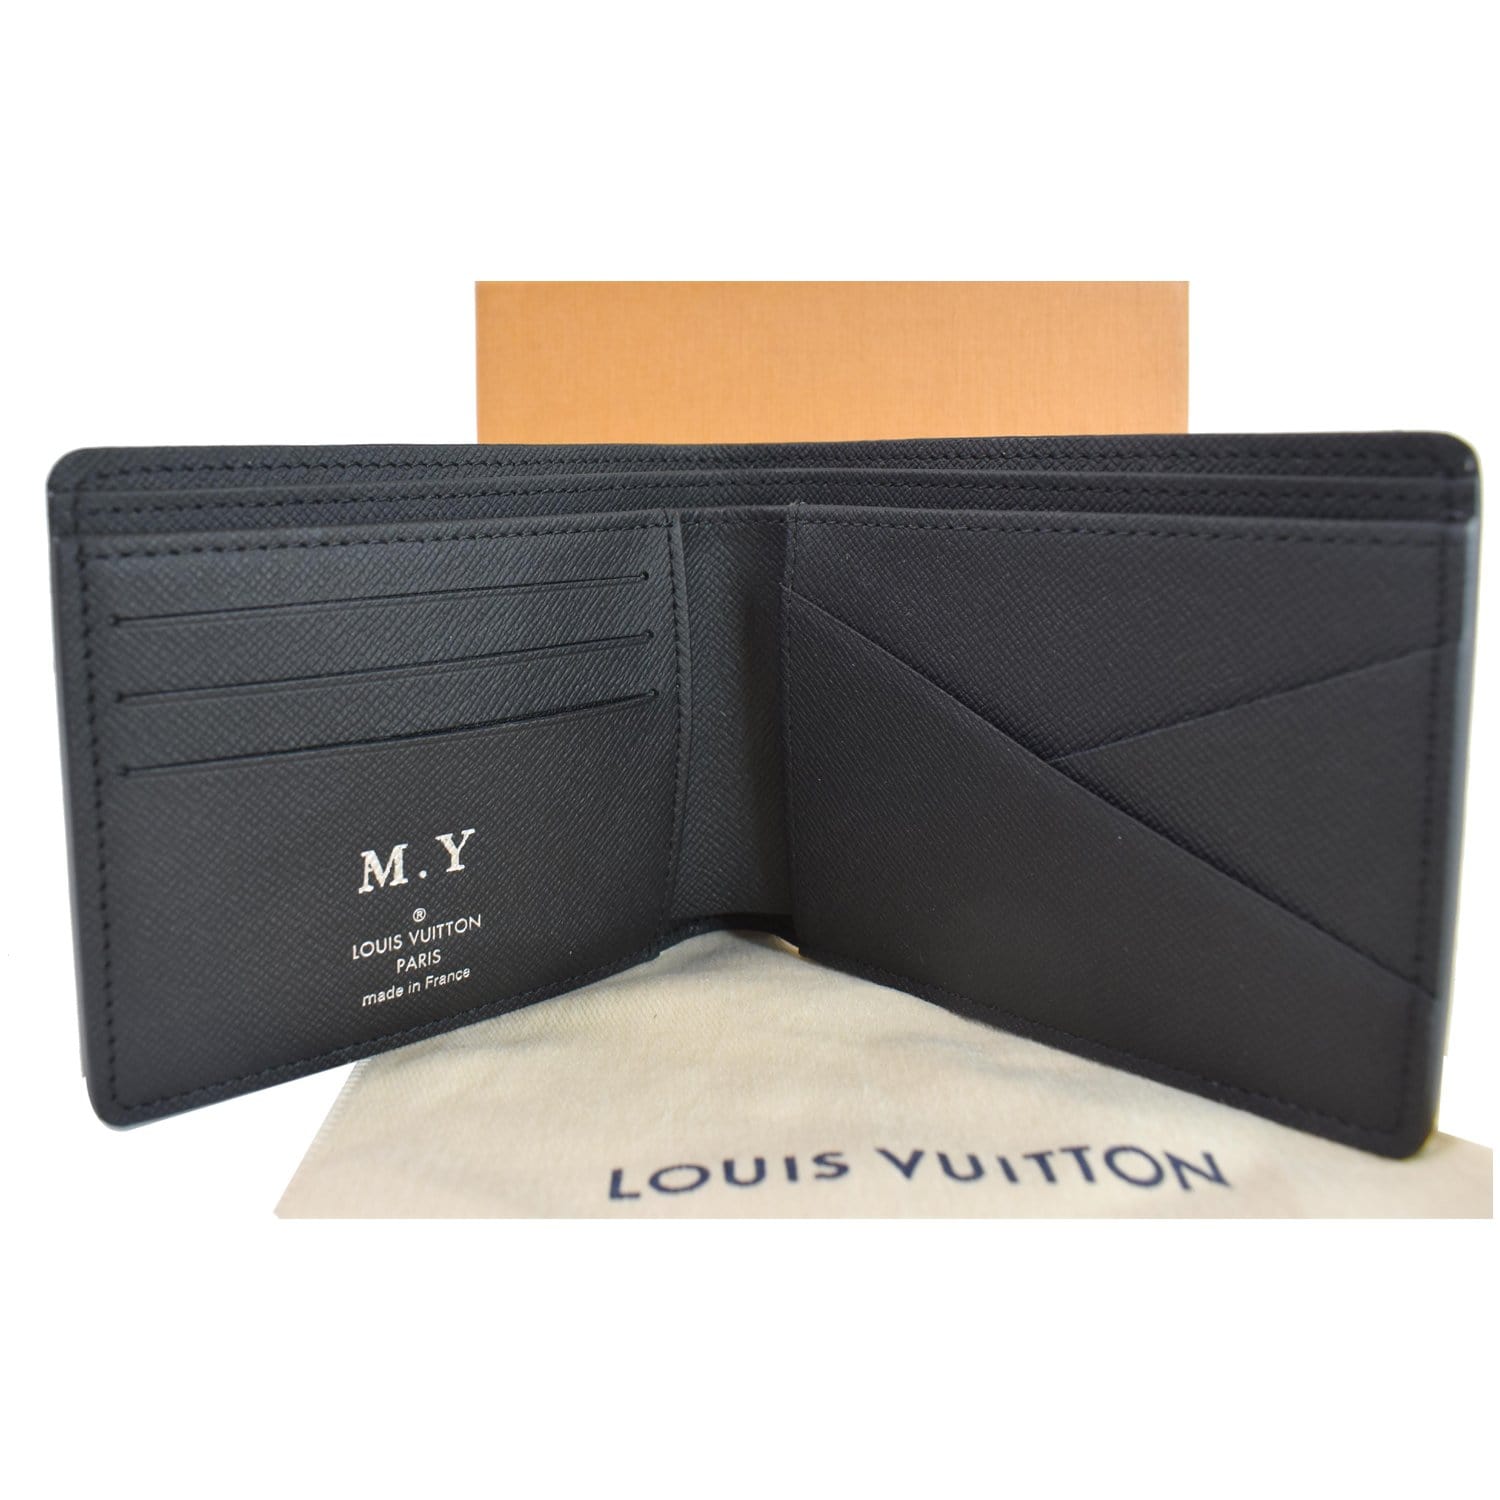 Louis Vuitton Damier Multiple Wallet